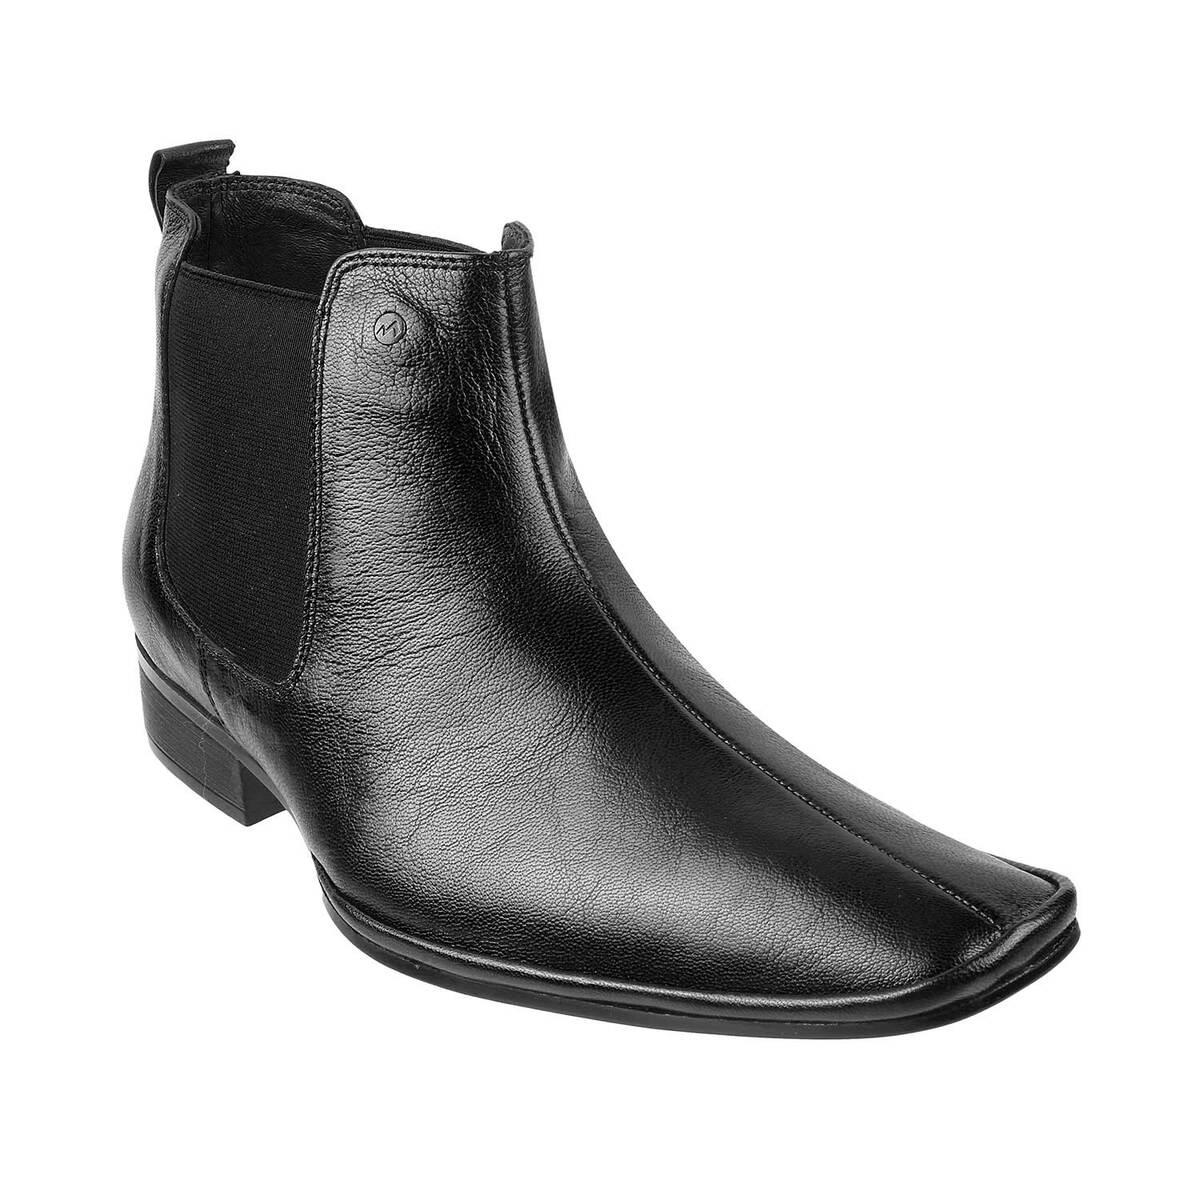 Buy Mochi Men Black Formal Boots Online